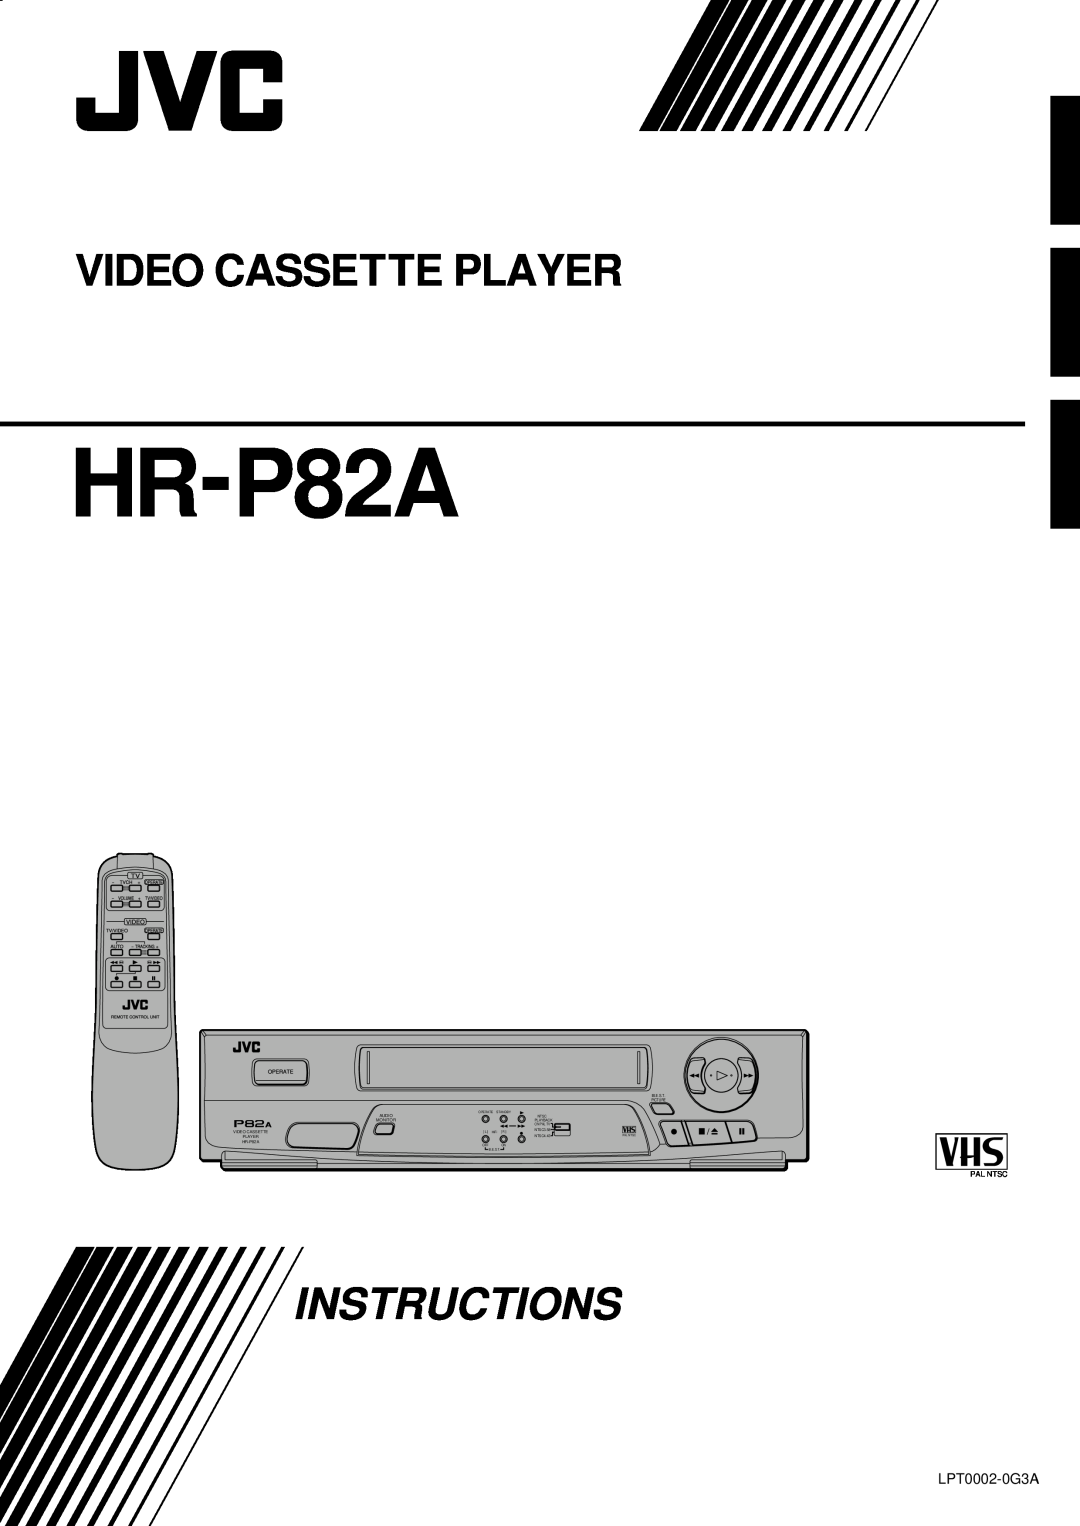 JVC HR-P82A manual Video Cassette Player, Instructions, LPT0002-0G3A, Pal Ntsc 